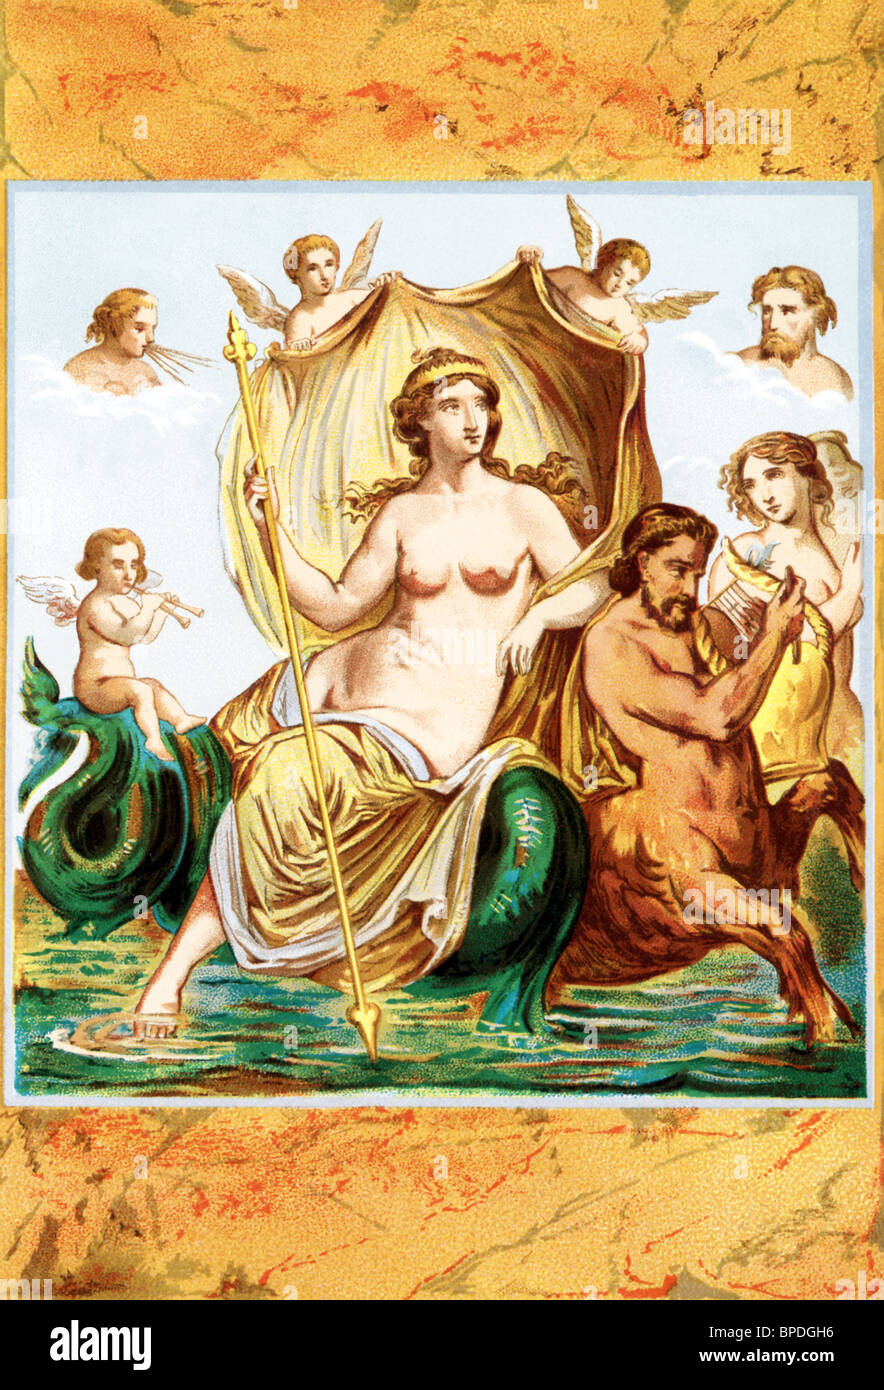 Selon la mythologie grecque, Amphitrite est une déesse de la mer et de l'épouse de Poséidon, dieu de la mer. Banque D'Images